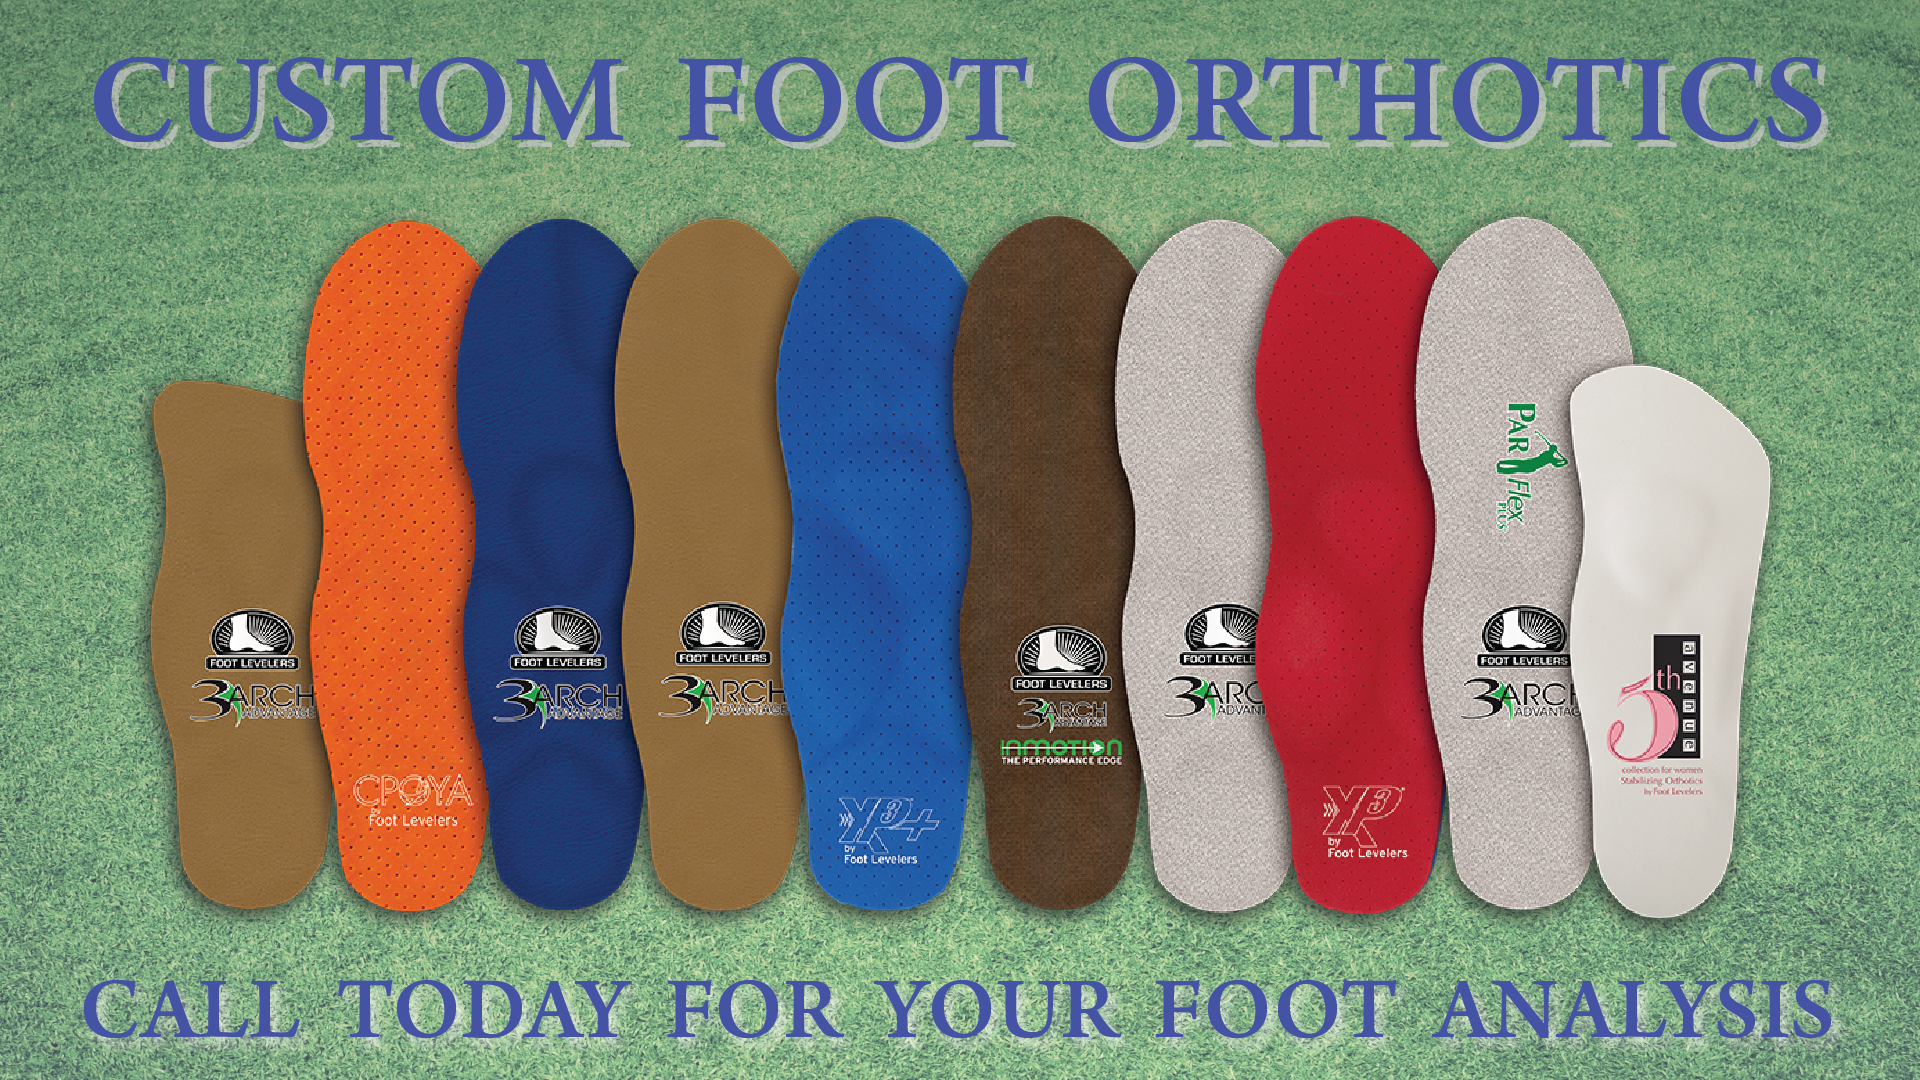 Custom Foot Orthotics Available At Arizona Family Health Centre - Call Today